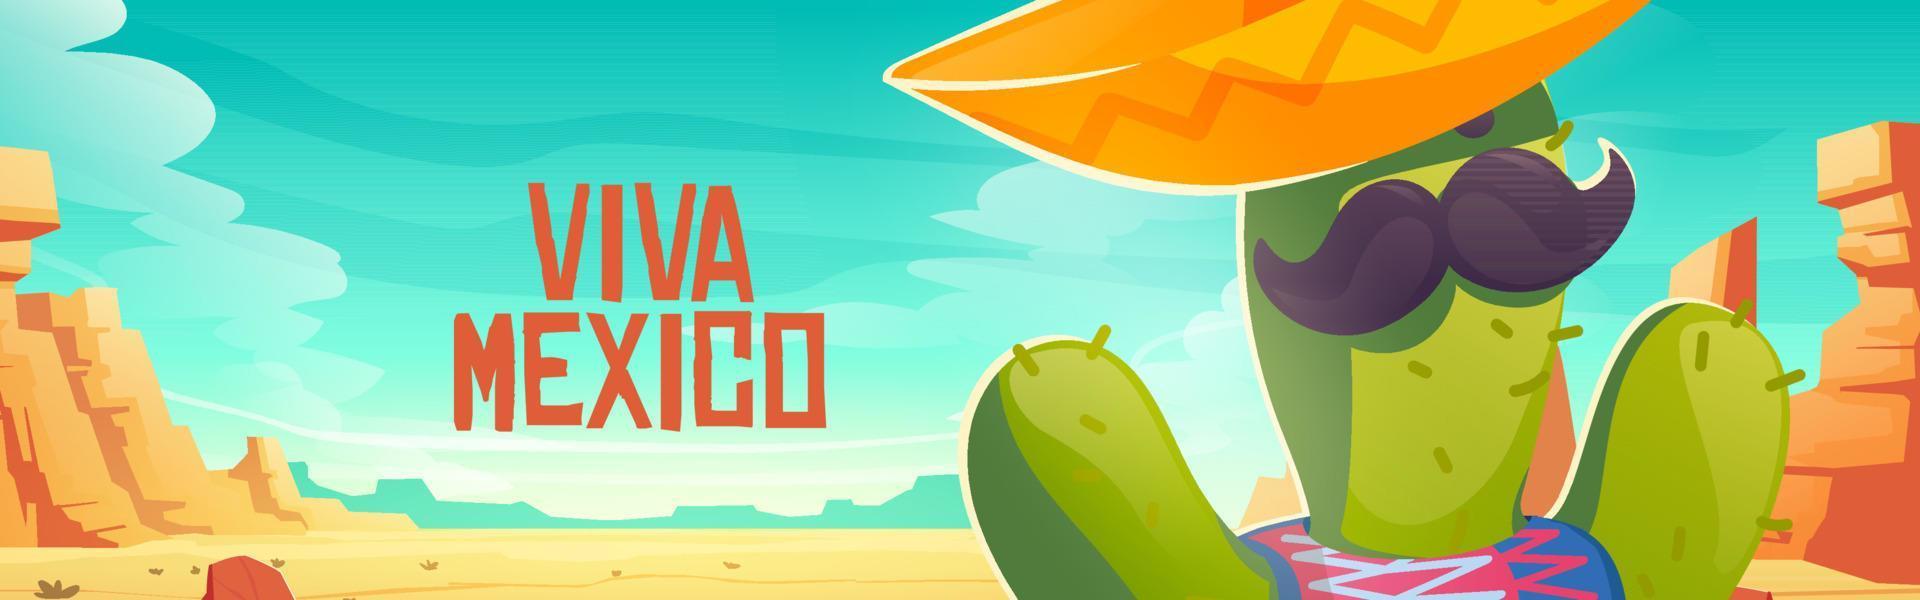 viva mexico banner mit niedlichem kaktus im sombrero vektor